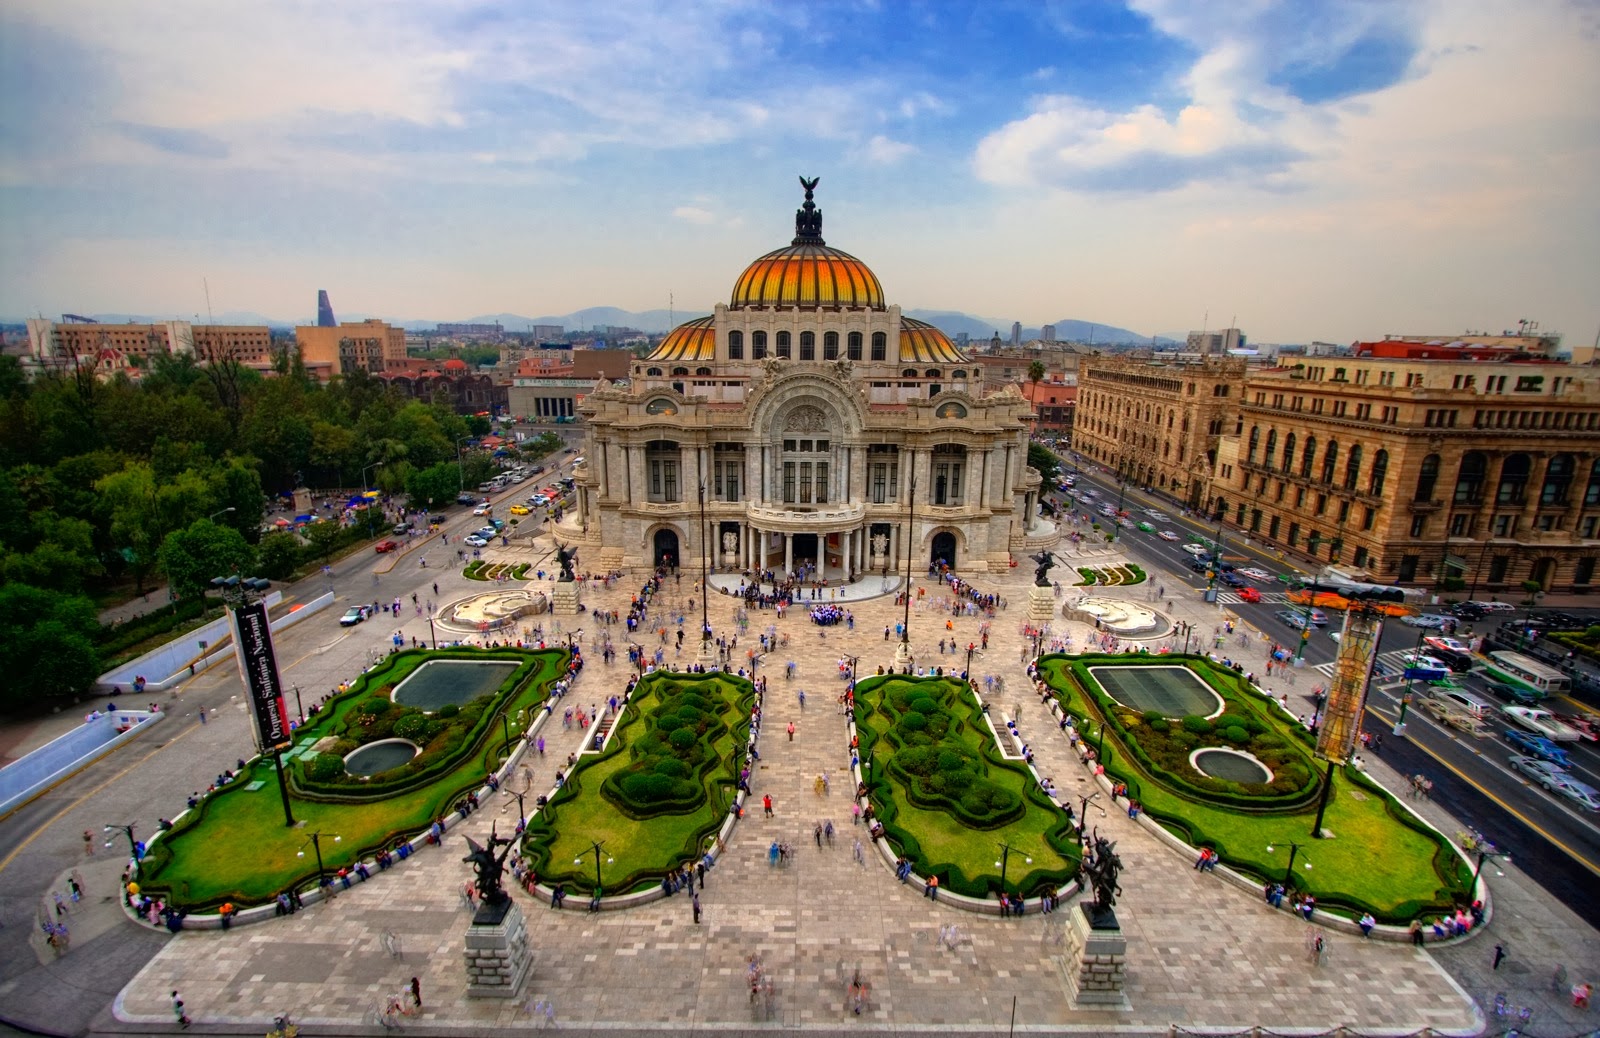 Mexico City, Mexico - Tourist Destinations